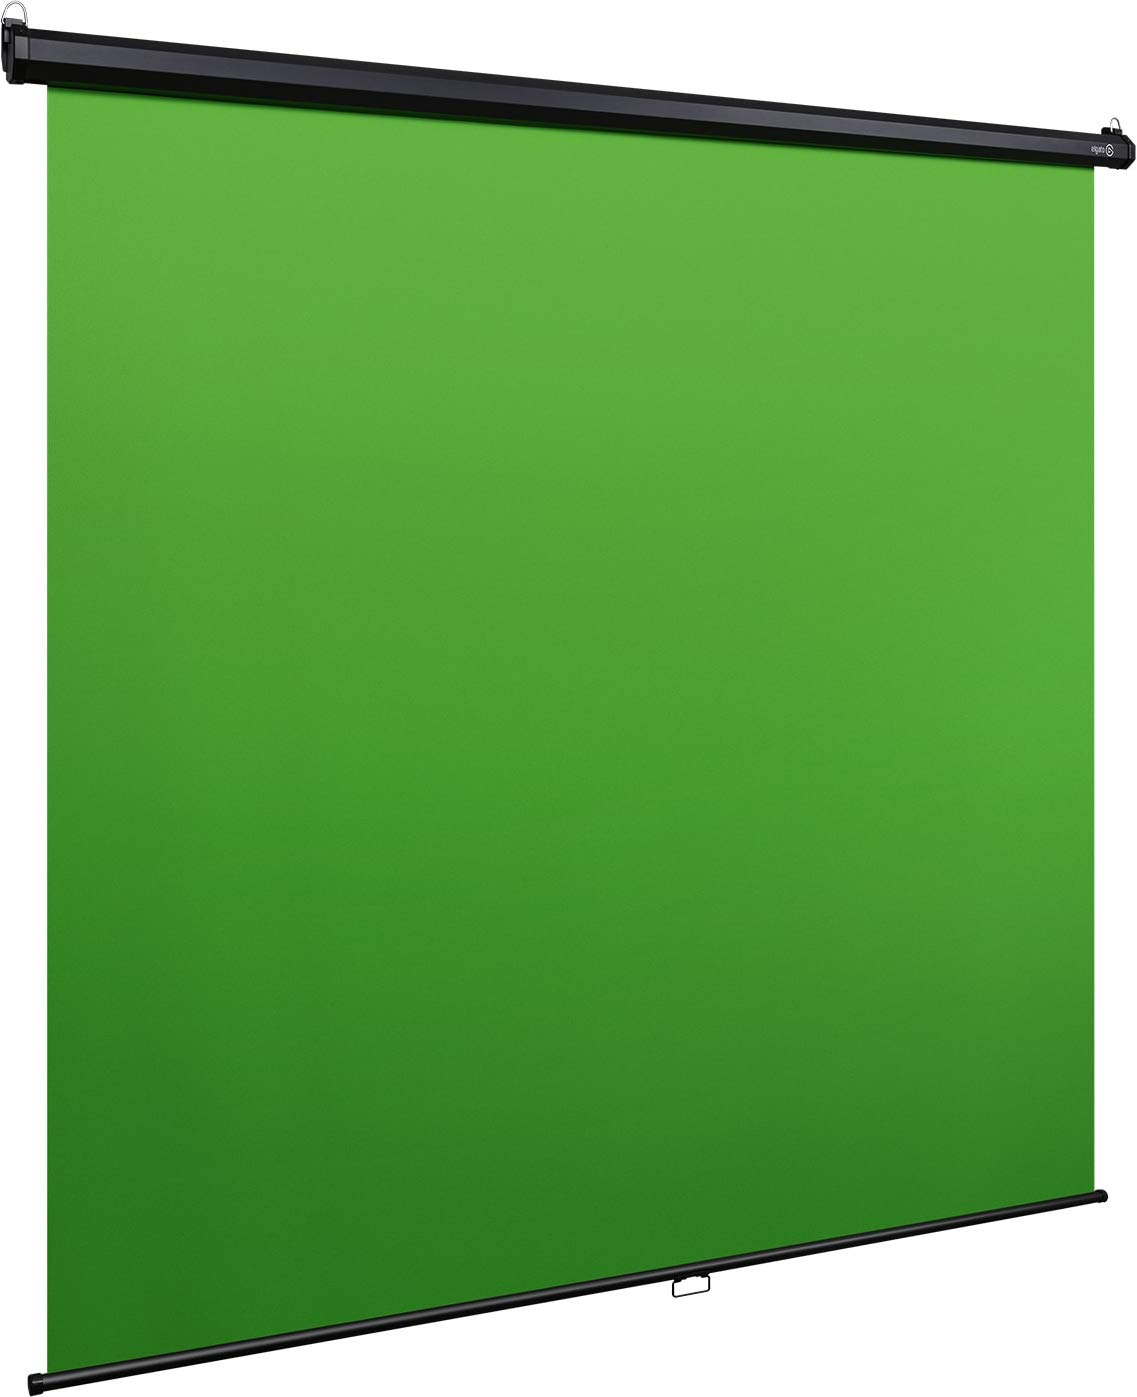 Elgato Green Screen: Hãy khám phá màn hình xanh Elgato đầy tiện ích để làm việc cho riêng bạn. Với khả năng tối ưu hóa không gian sử dụng và khả năng tương thích rộng rãi, đây là phụ kiện không thể thiếu cho những người làm việc với video.